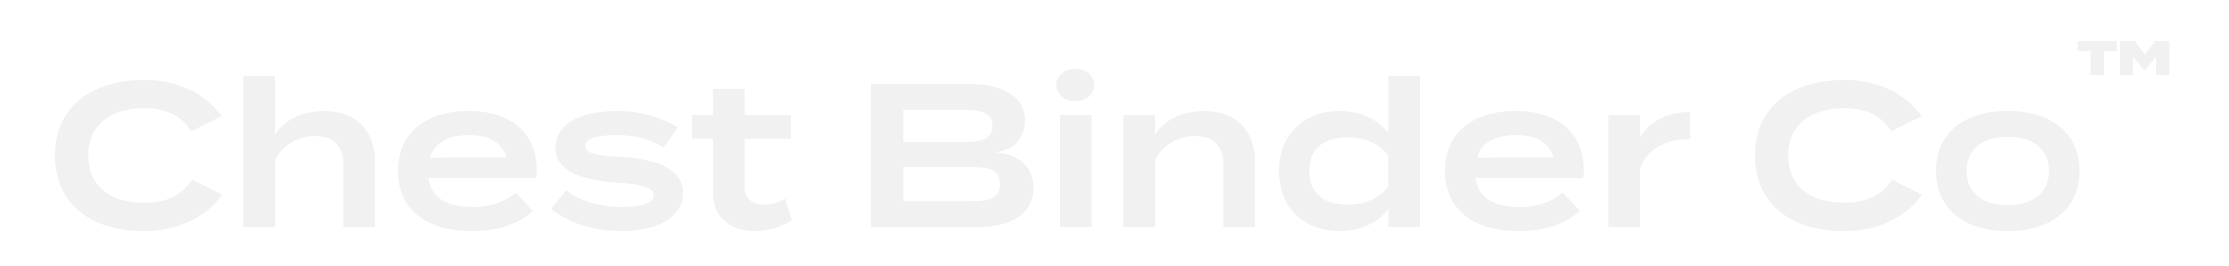 Chest Binder Co logo